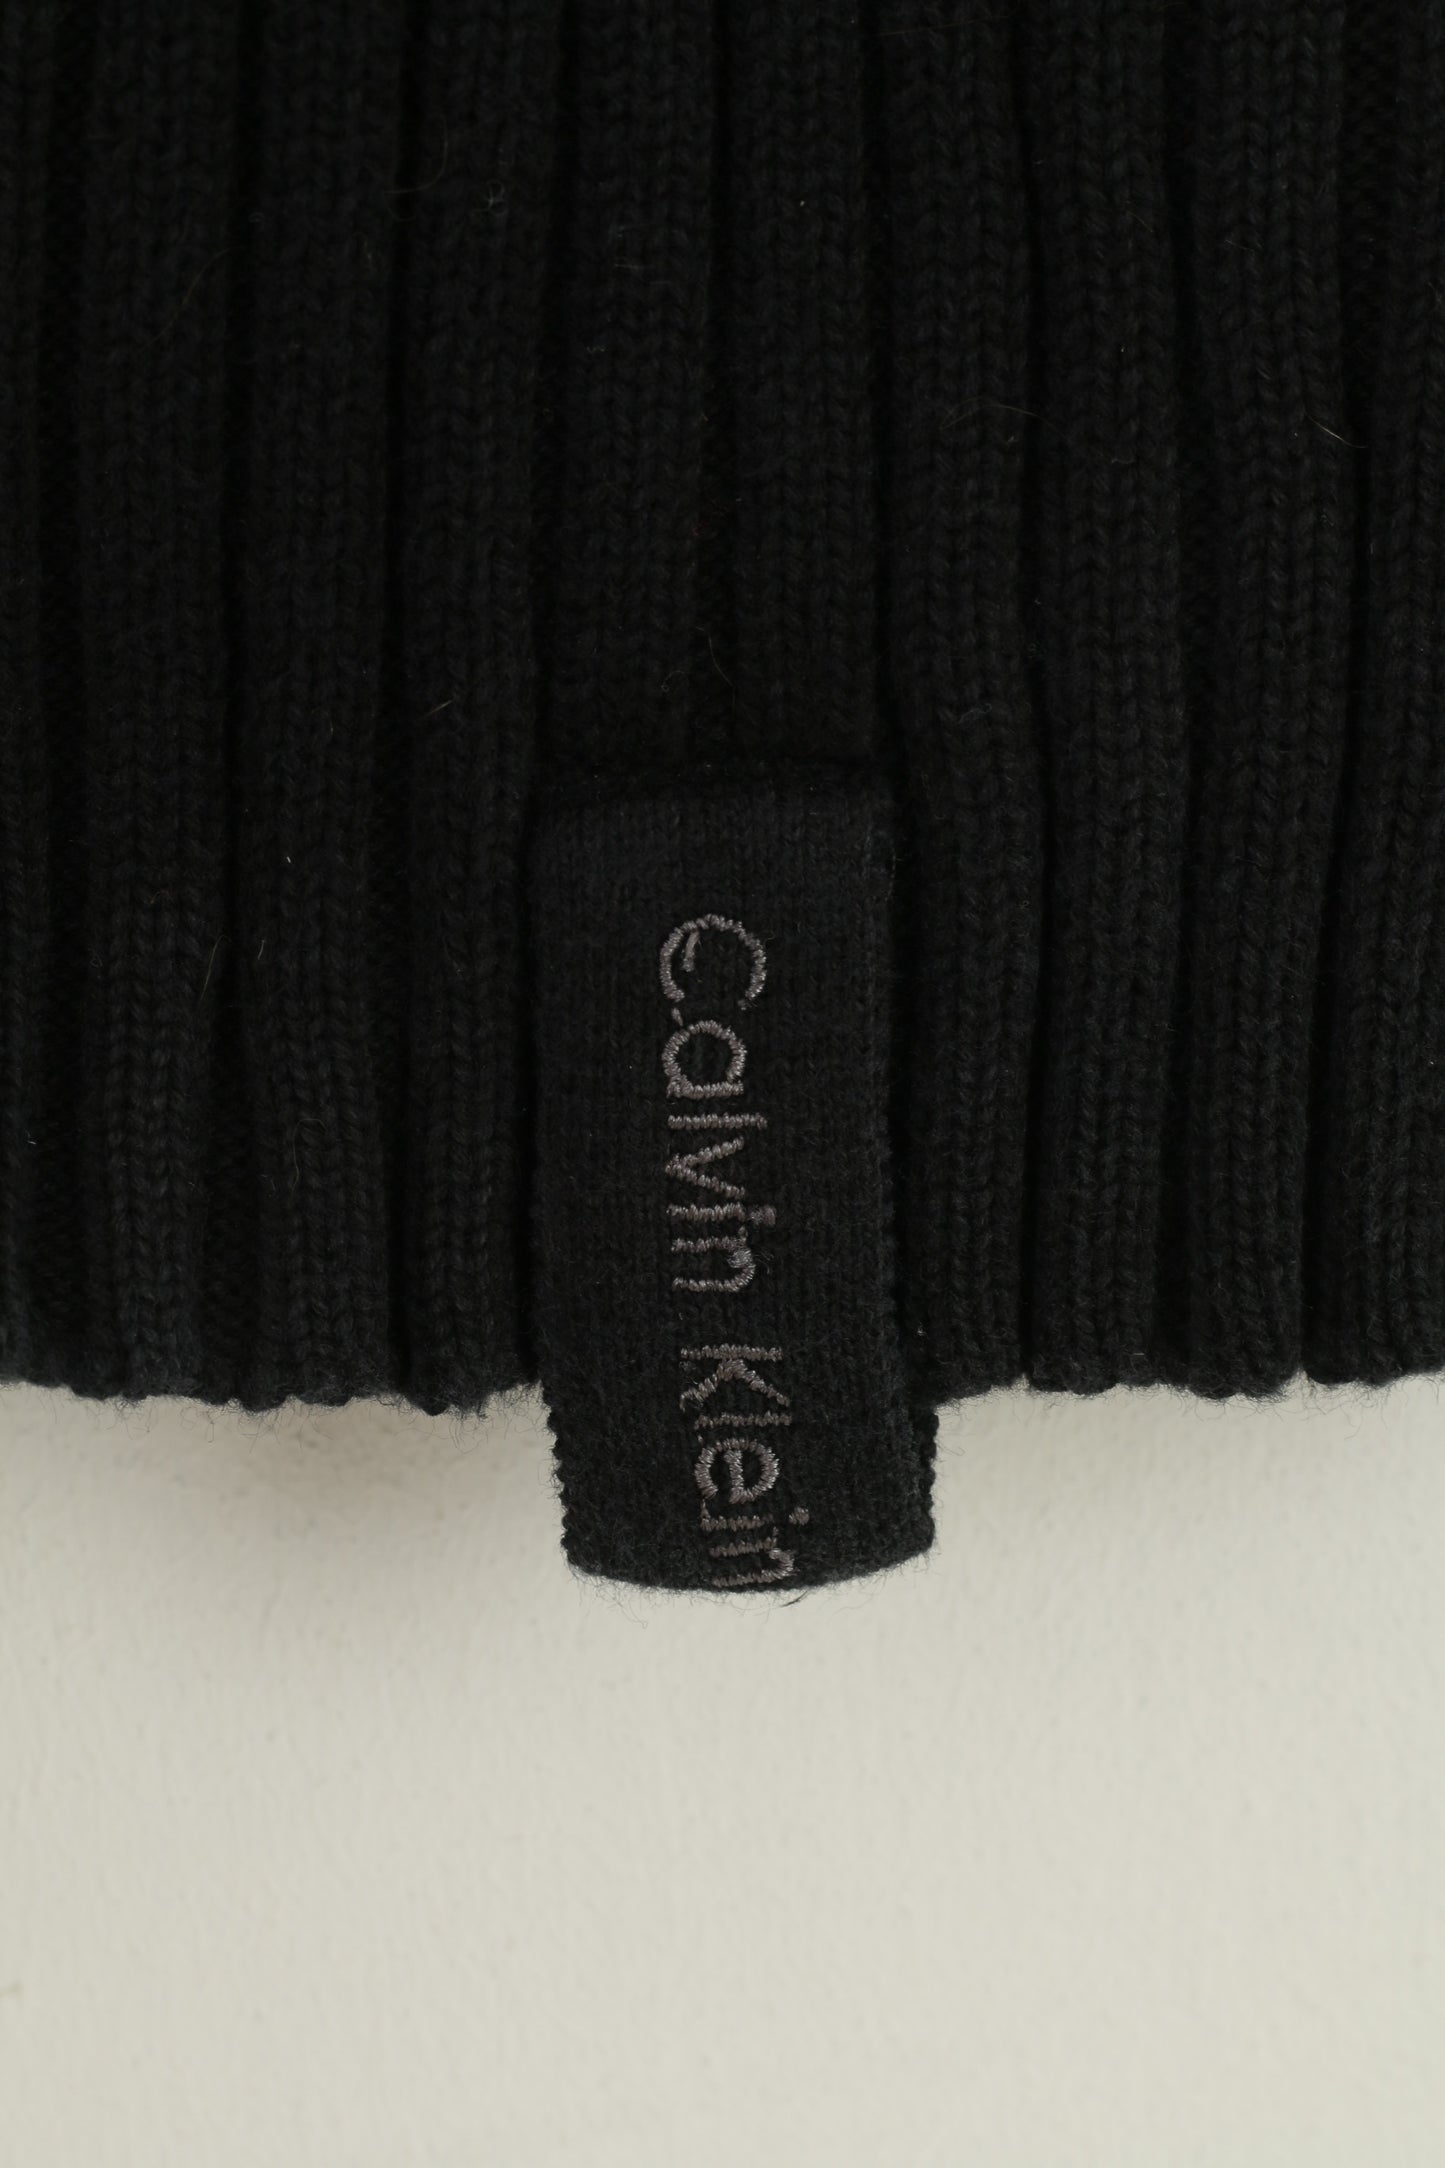 Calvin Klein Jeans Donna M Maglione Maglione elasticizzato con cerniera intera in cotone nero a righe Top vintage